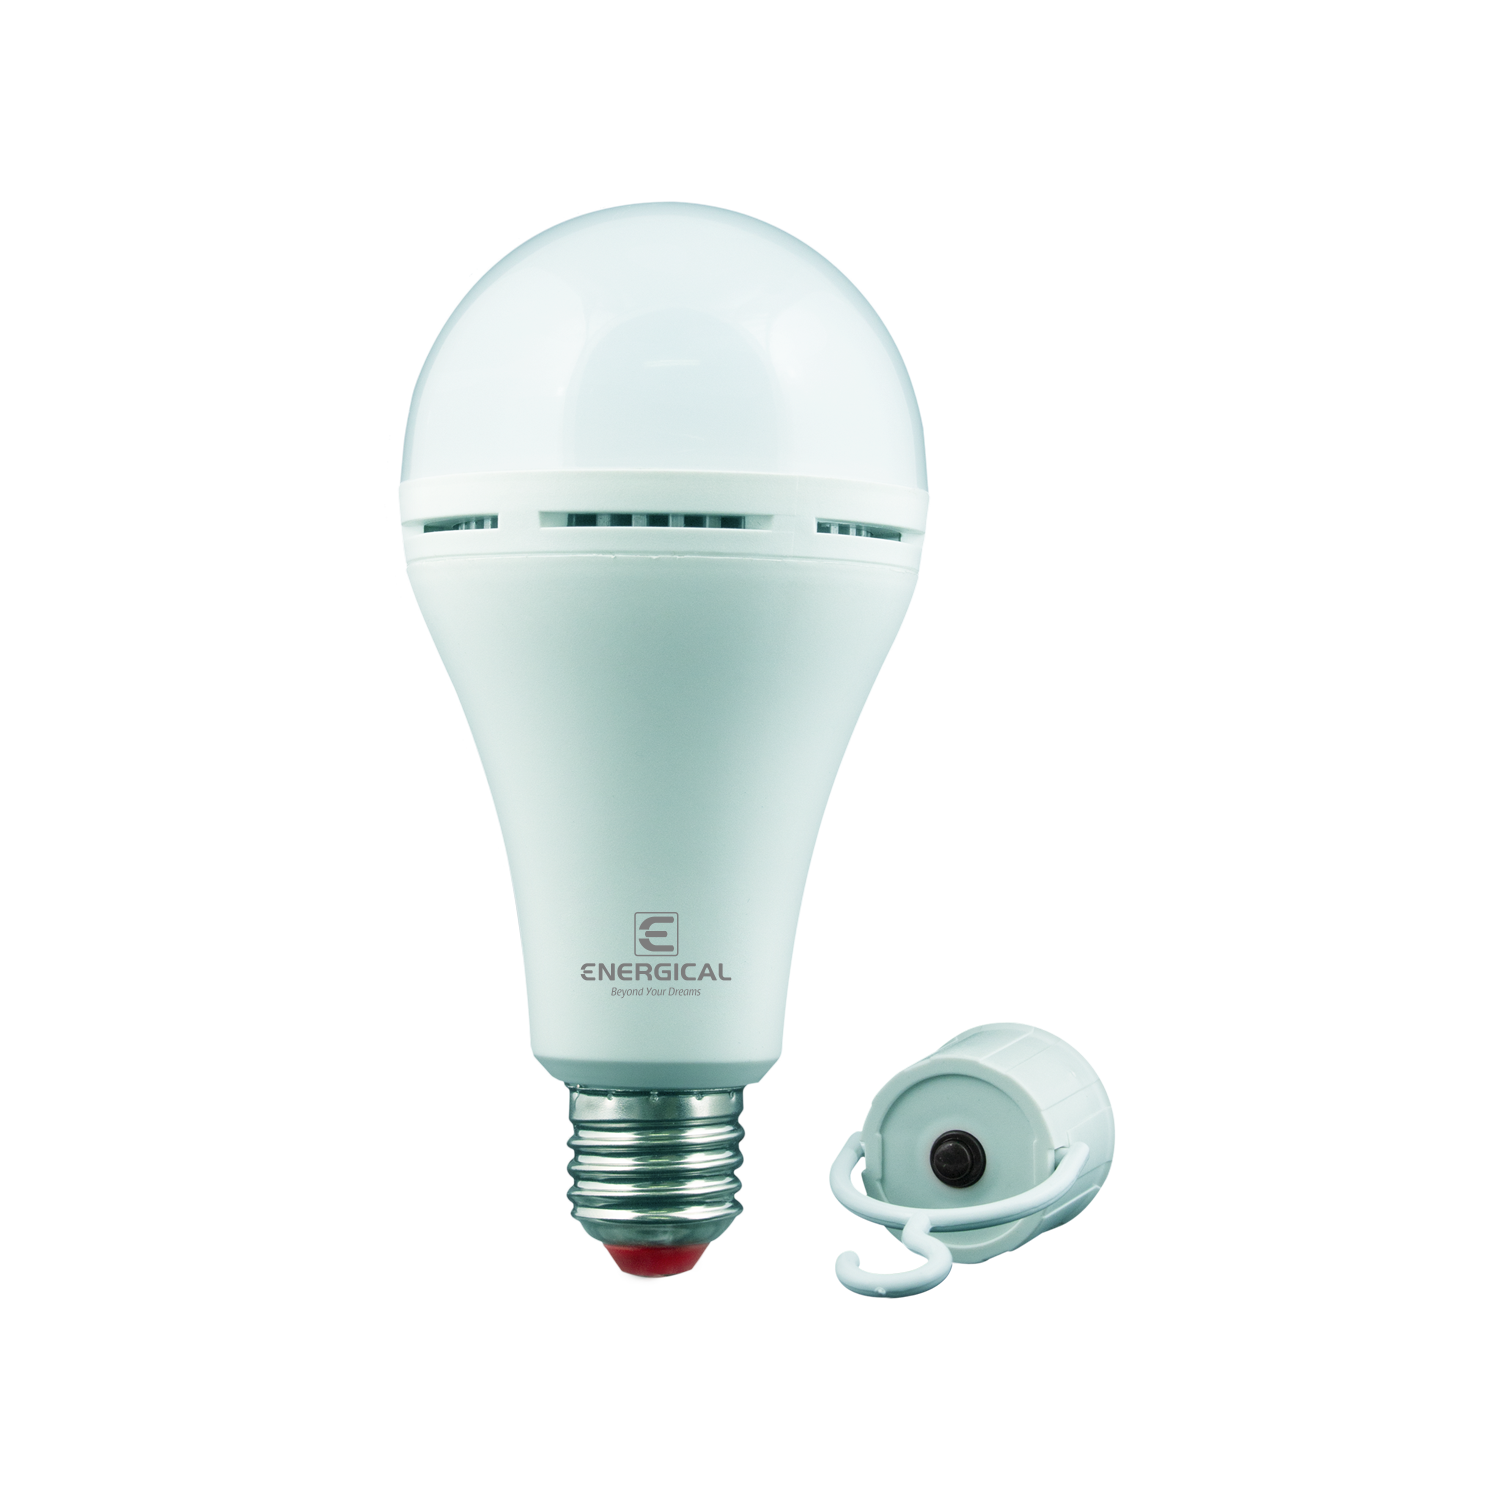 Lampe-urgence-energical